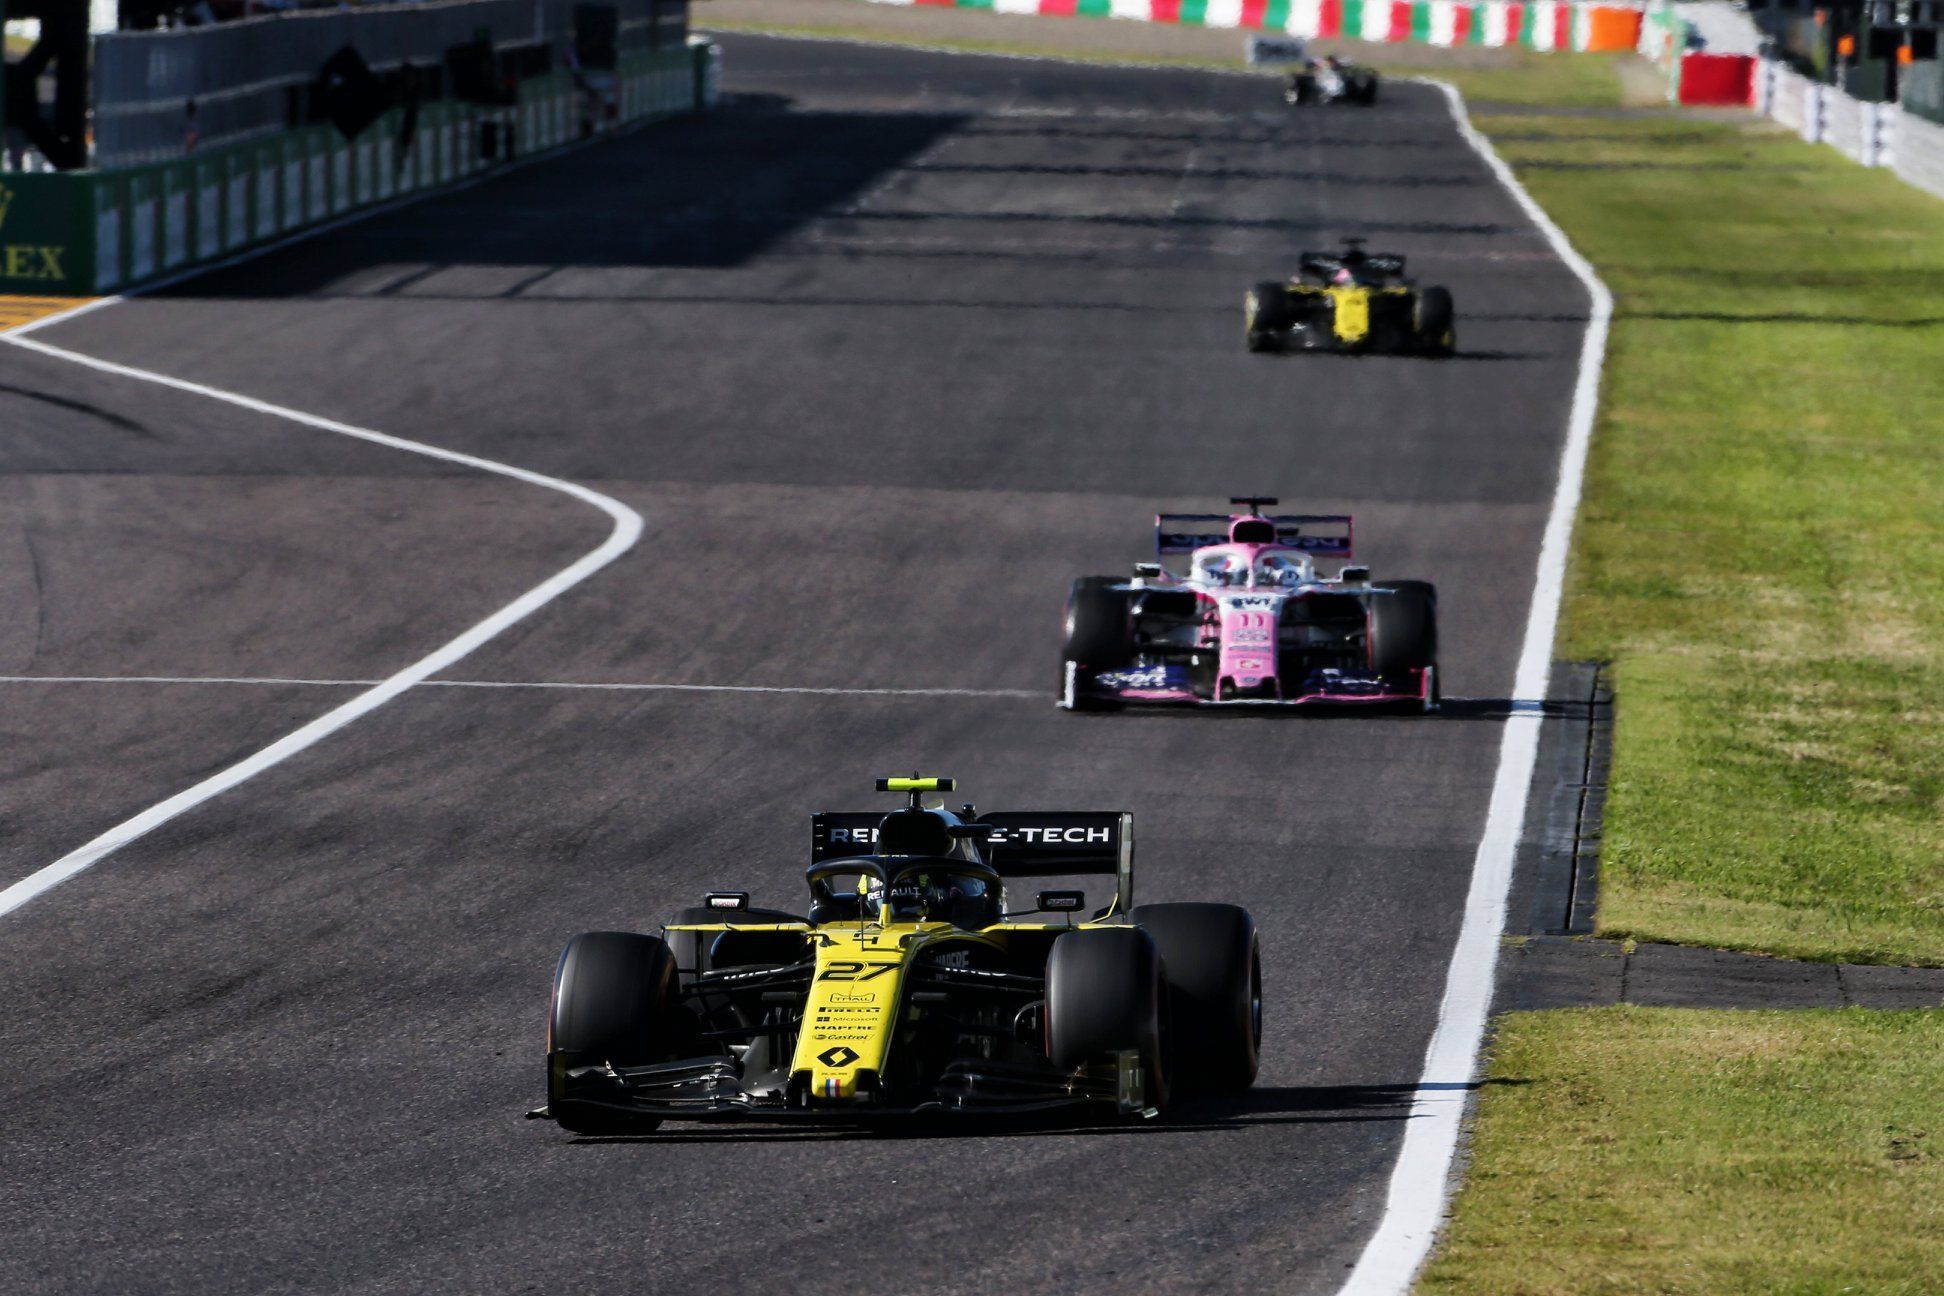 Daniel Ricciardo, Renault